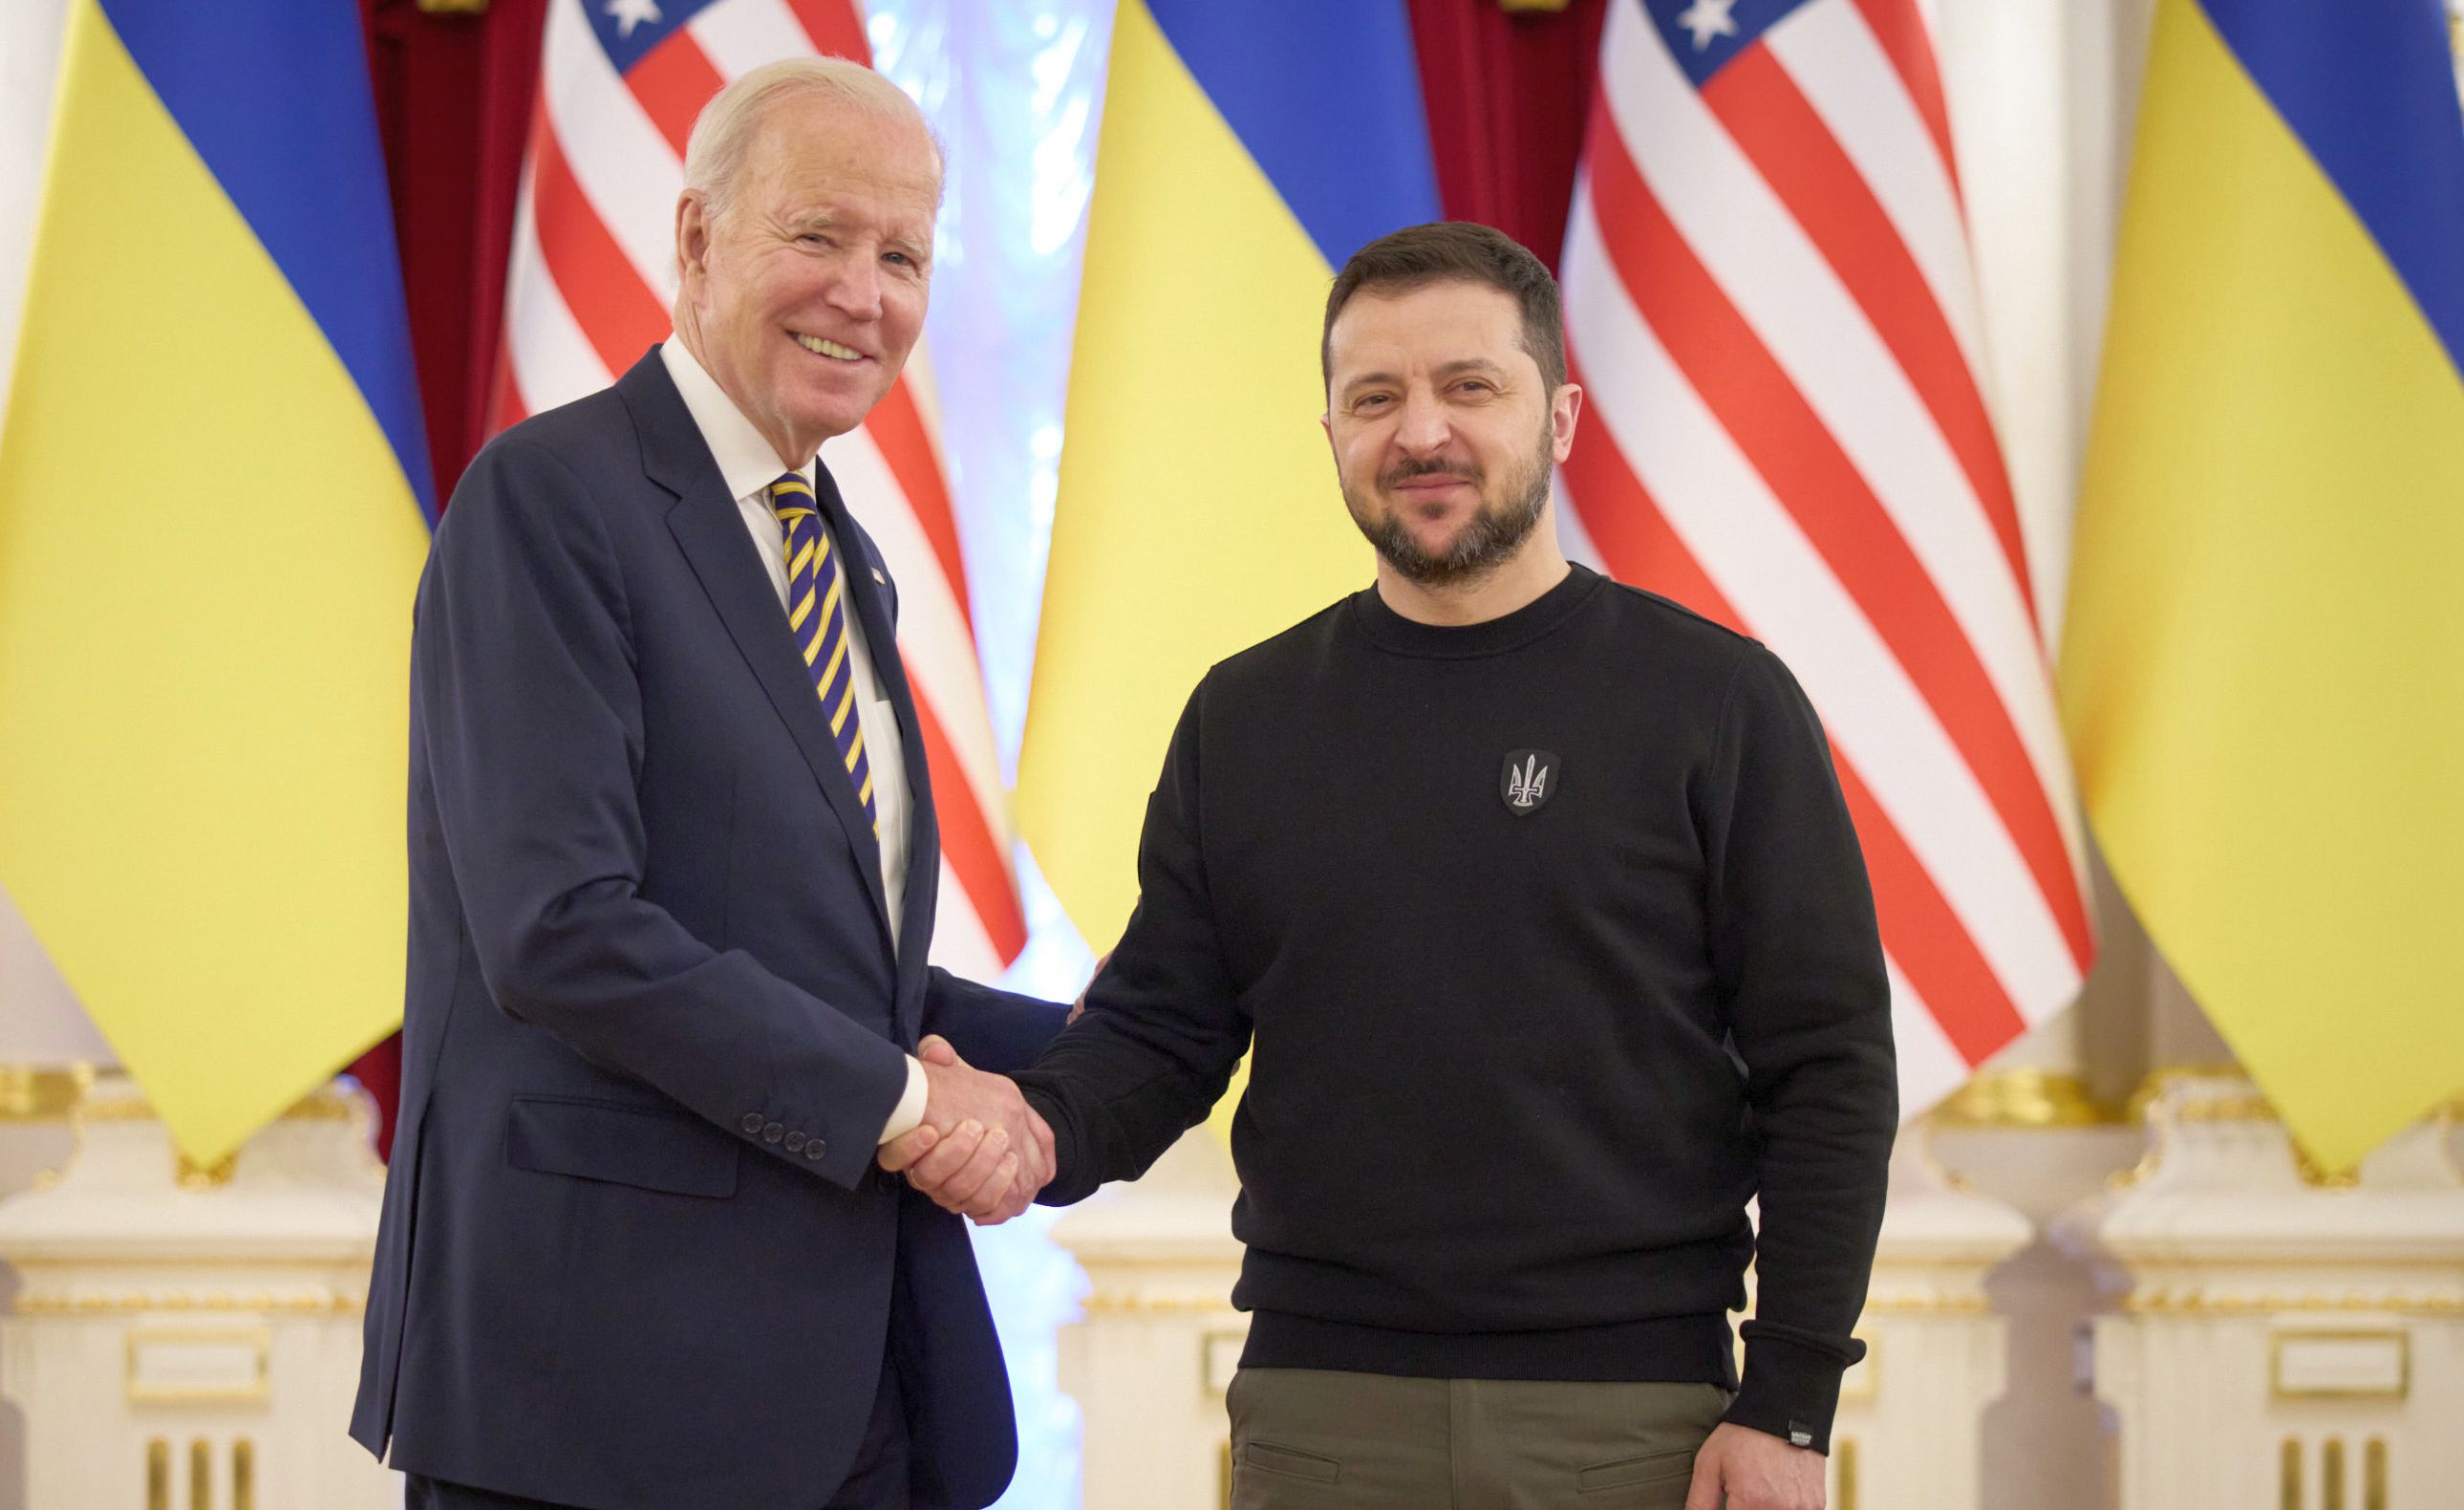 Joe Biden asigură Ucraina că va primi în continuare ajutor financiar american - 1-1696229902.jpg